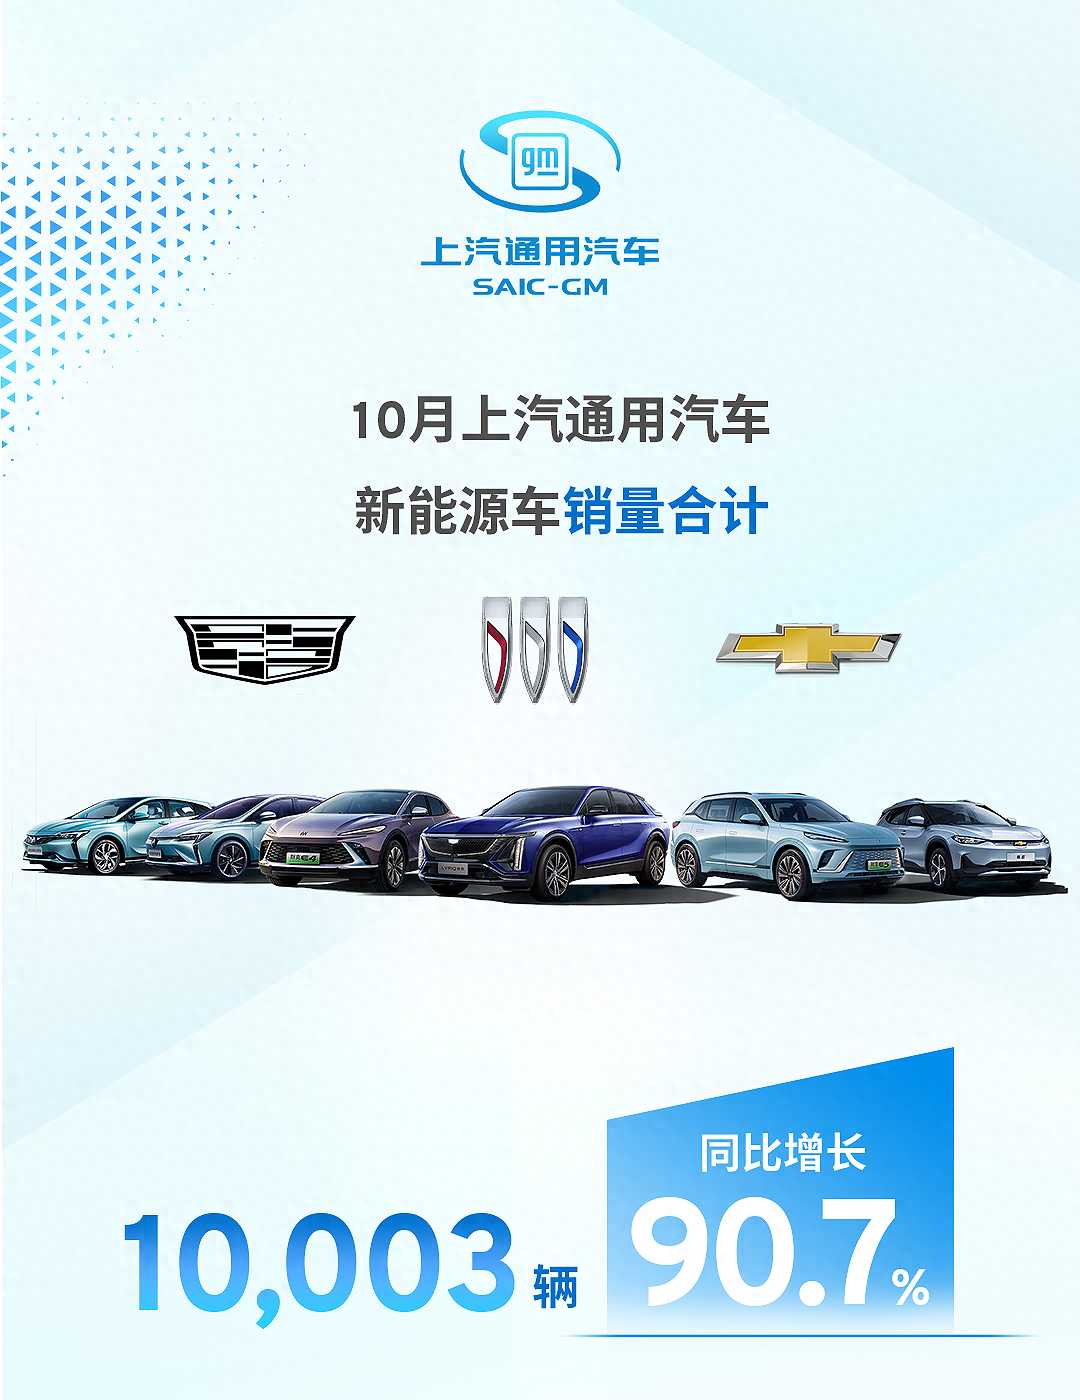 上汽通用10月新能源车销量10003辆，别克E5车型3841辆